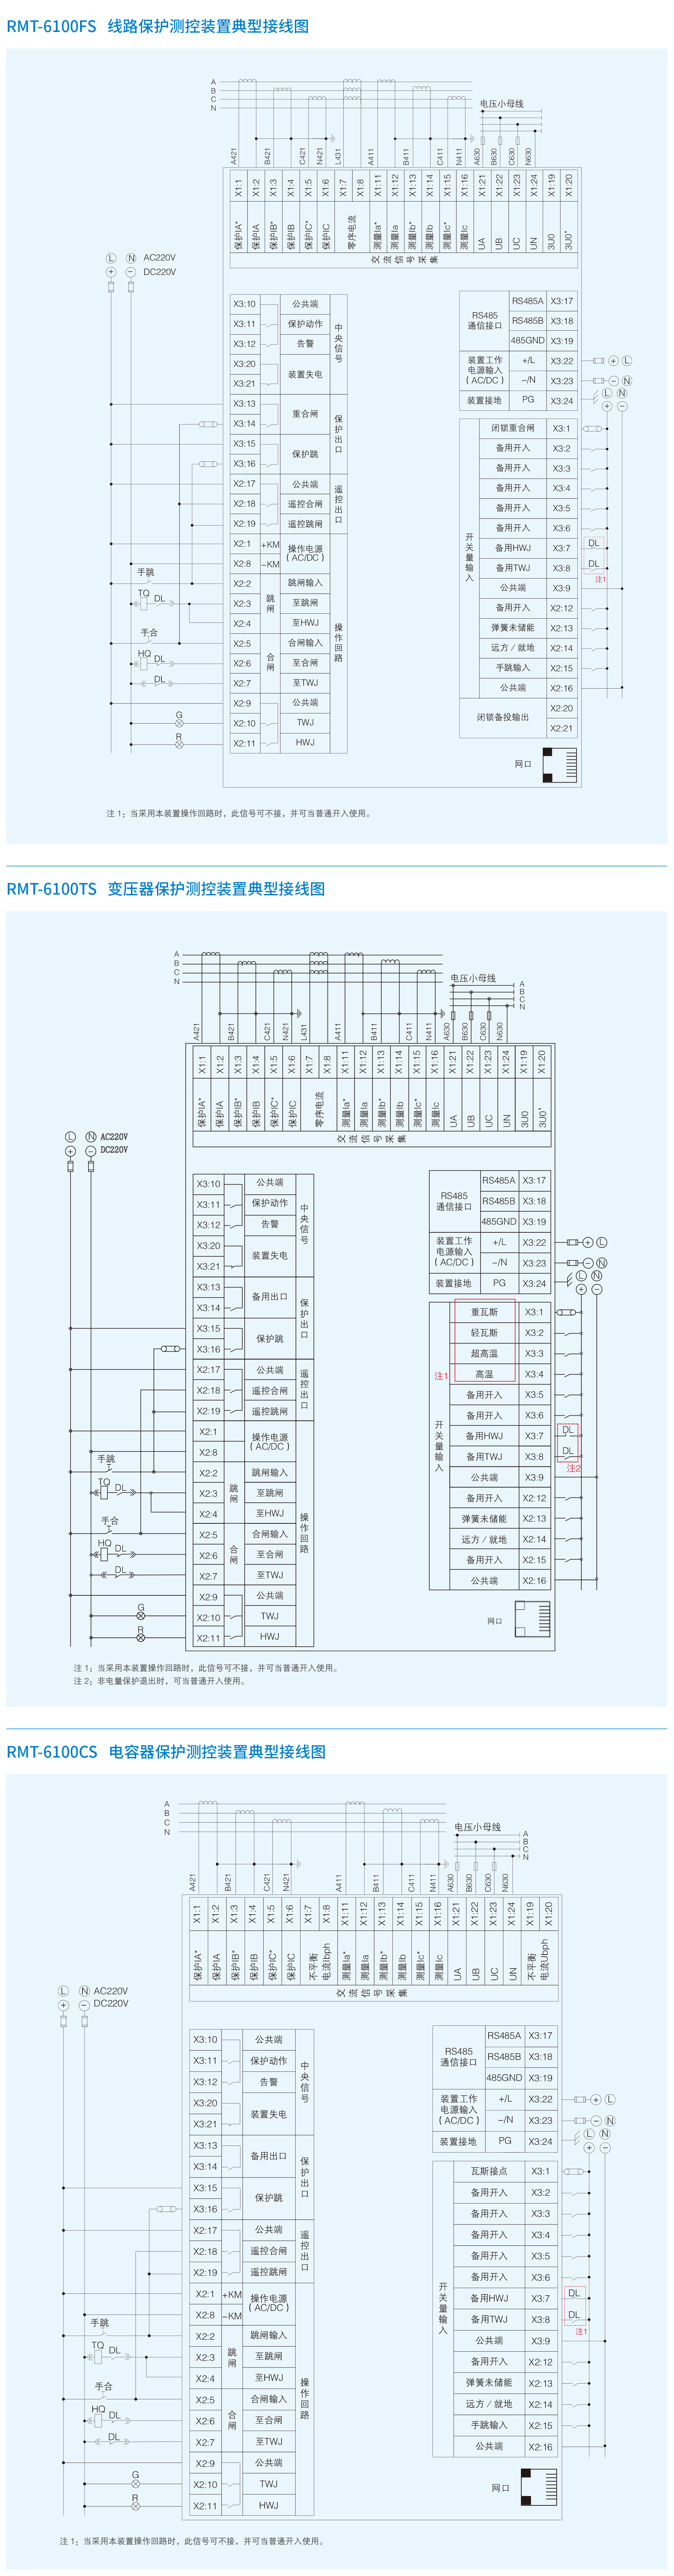 RMT-6100S系列微机综合保护测控装置-2.png